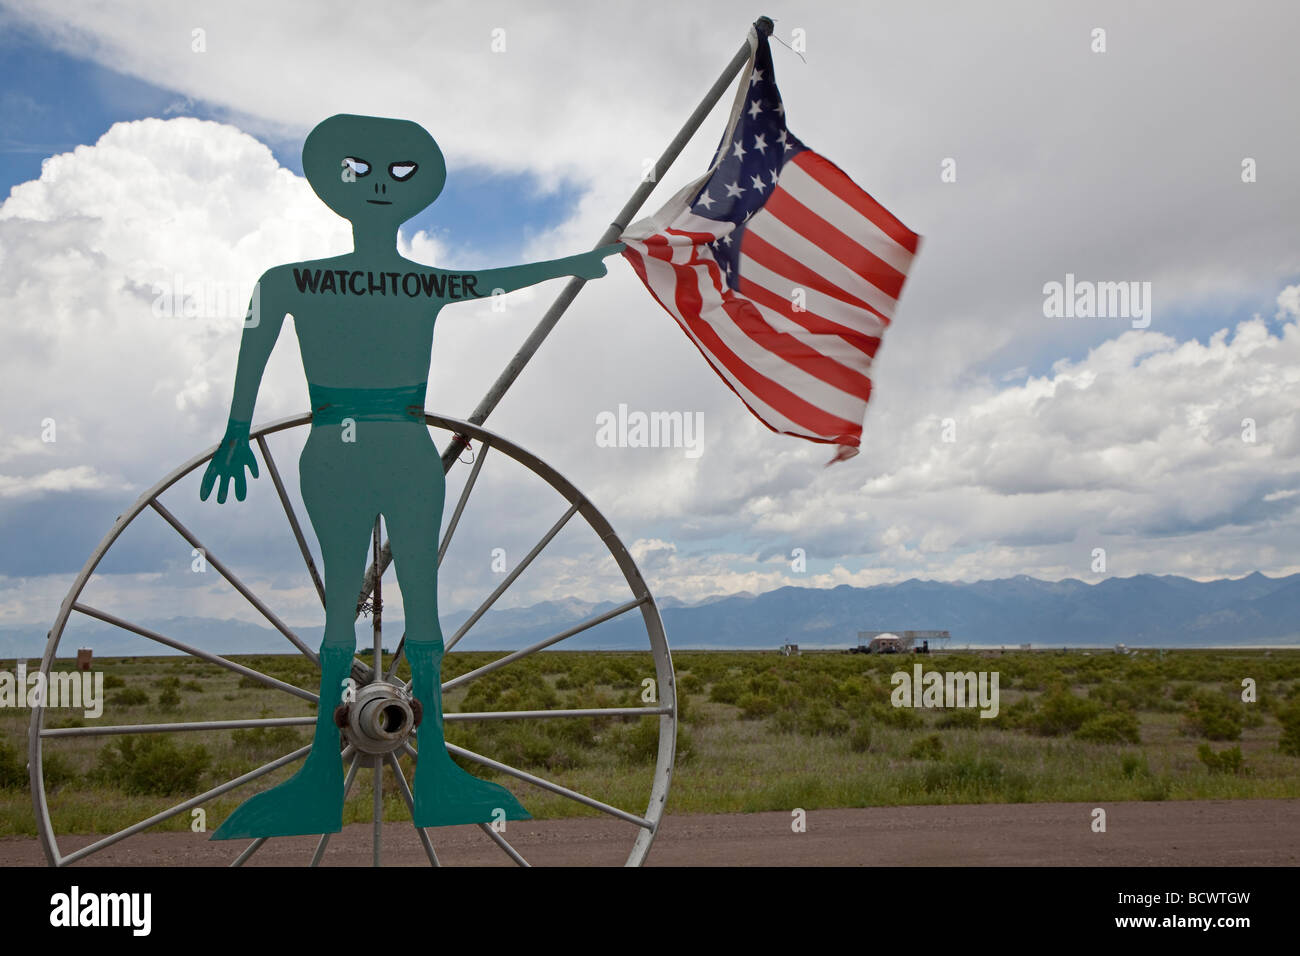 La torre di avvistamento UFO, una attrazione turistica in Colorado di San Luis Valley Foto Stock